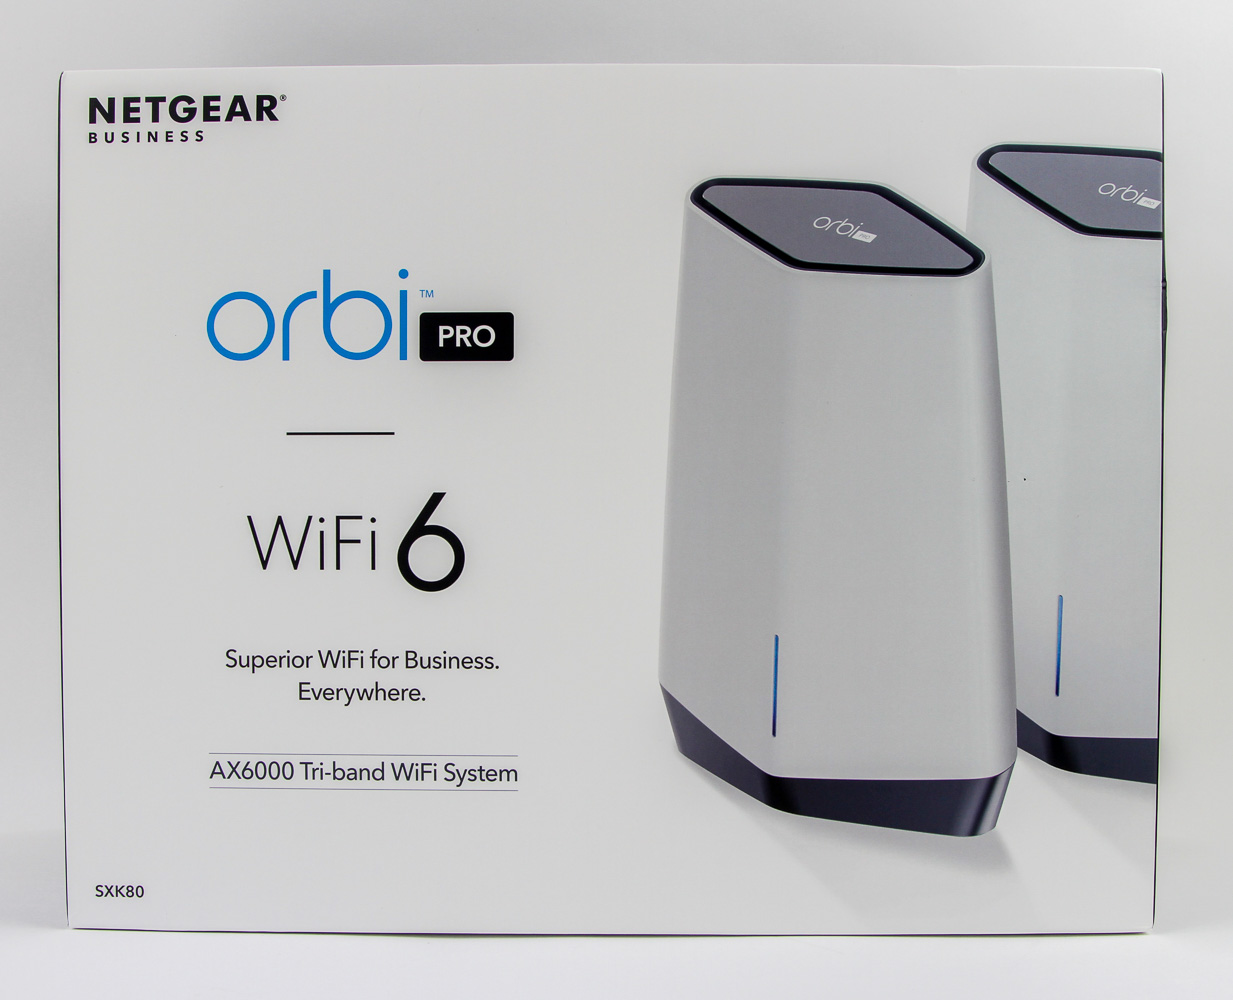 NETGEAR Orbi Pro SXK80 WiFi 6 System Review - Packaging